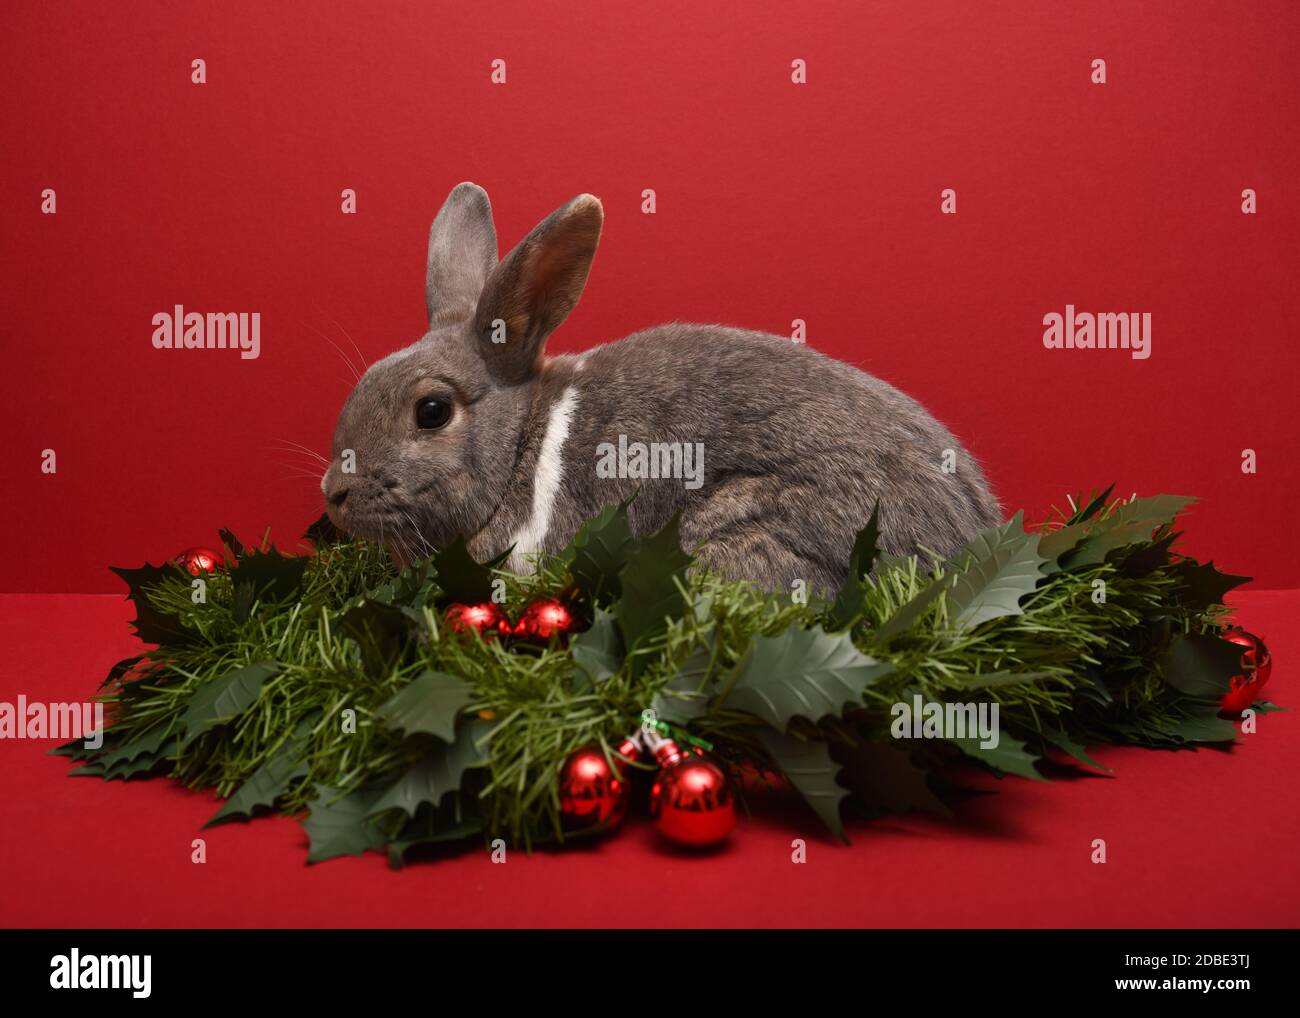 Photographie d'un lapin dans une guirlande de Noël Banque D'Images